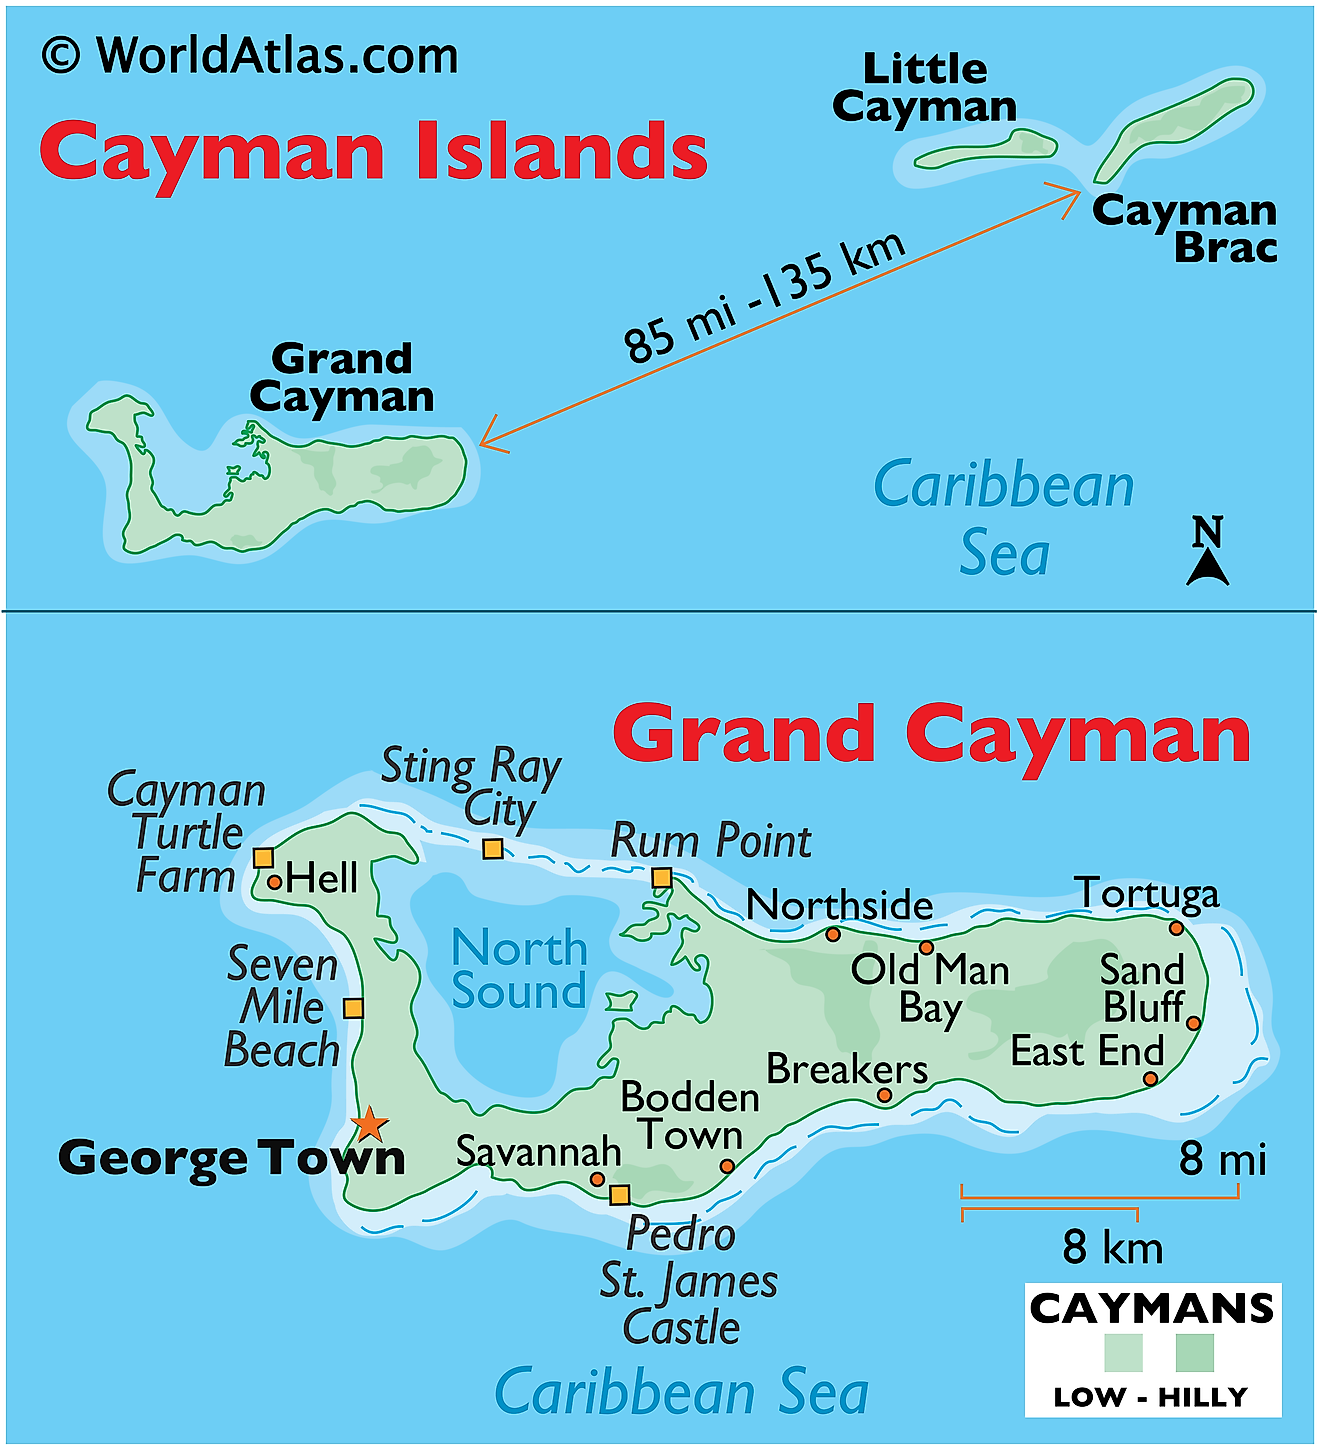 Mapa físico de las Islas Caimán que muestra el terreno, el Mar Caribe y North Sounds, asentamientos importantes, etc.